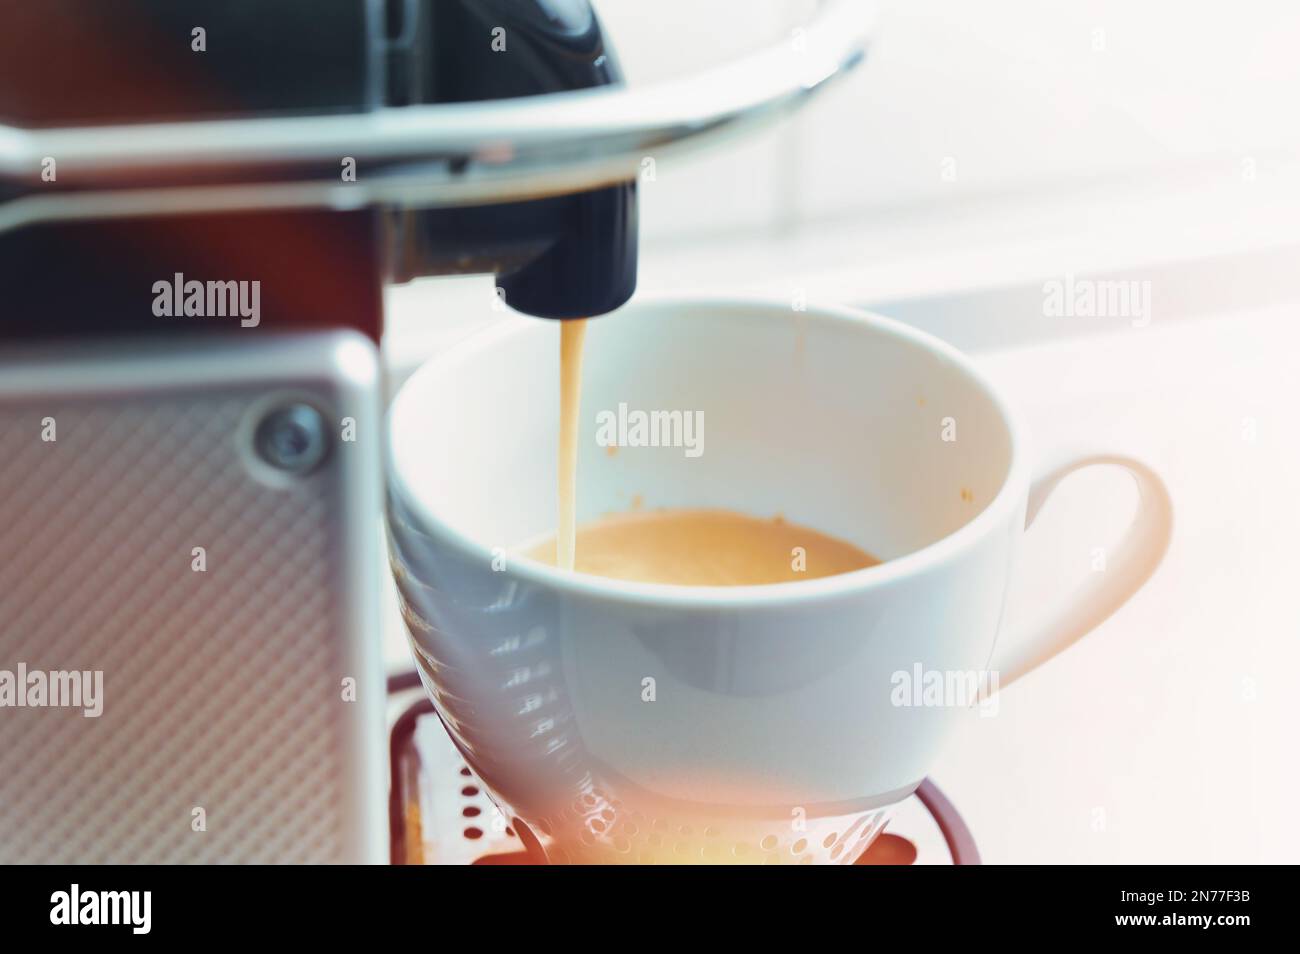 Frischer heißer Kaffee fließt aus einer modernen Kapselmaschine in eine weiße Porzellantasse, farbige Lichtreflexe, heller Hintergrund mit ausgewähltem Kopierbereich Stockfoto